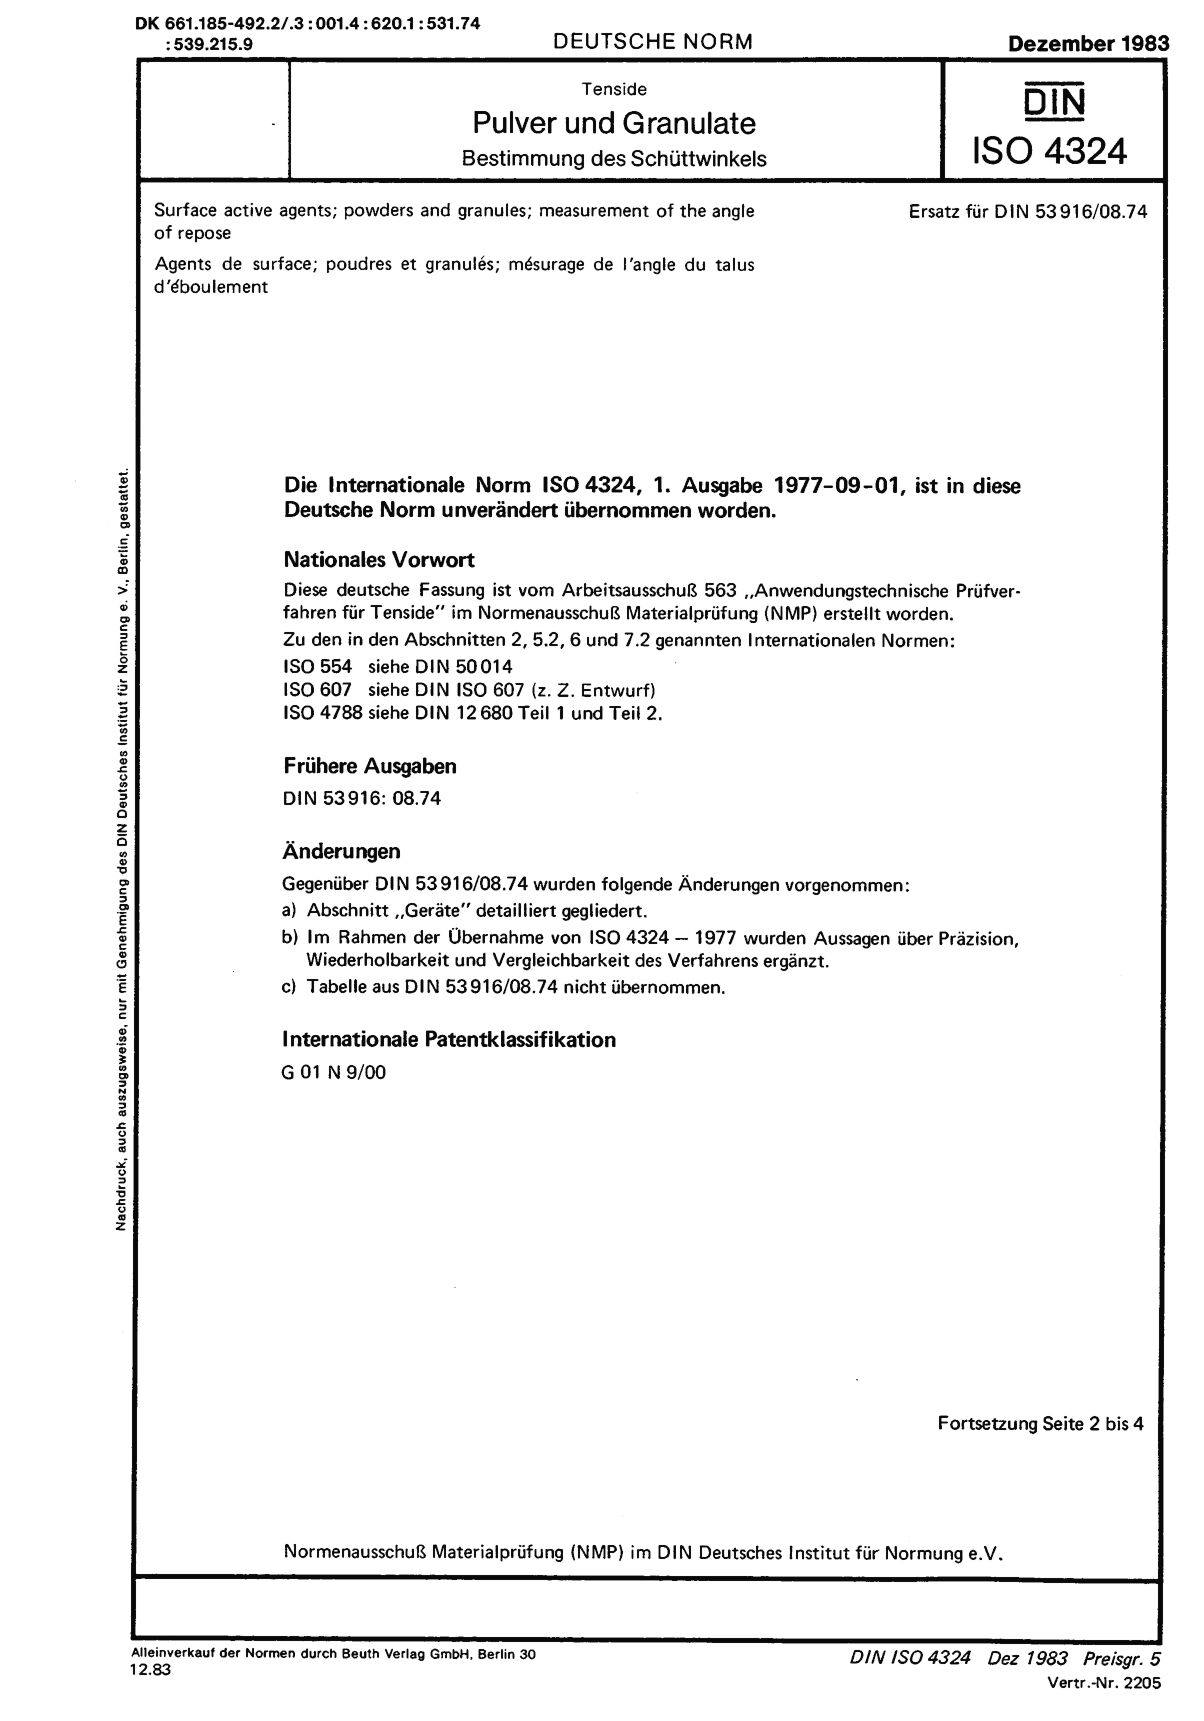 DIN ISO 4324:1983封面图